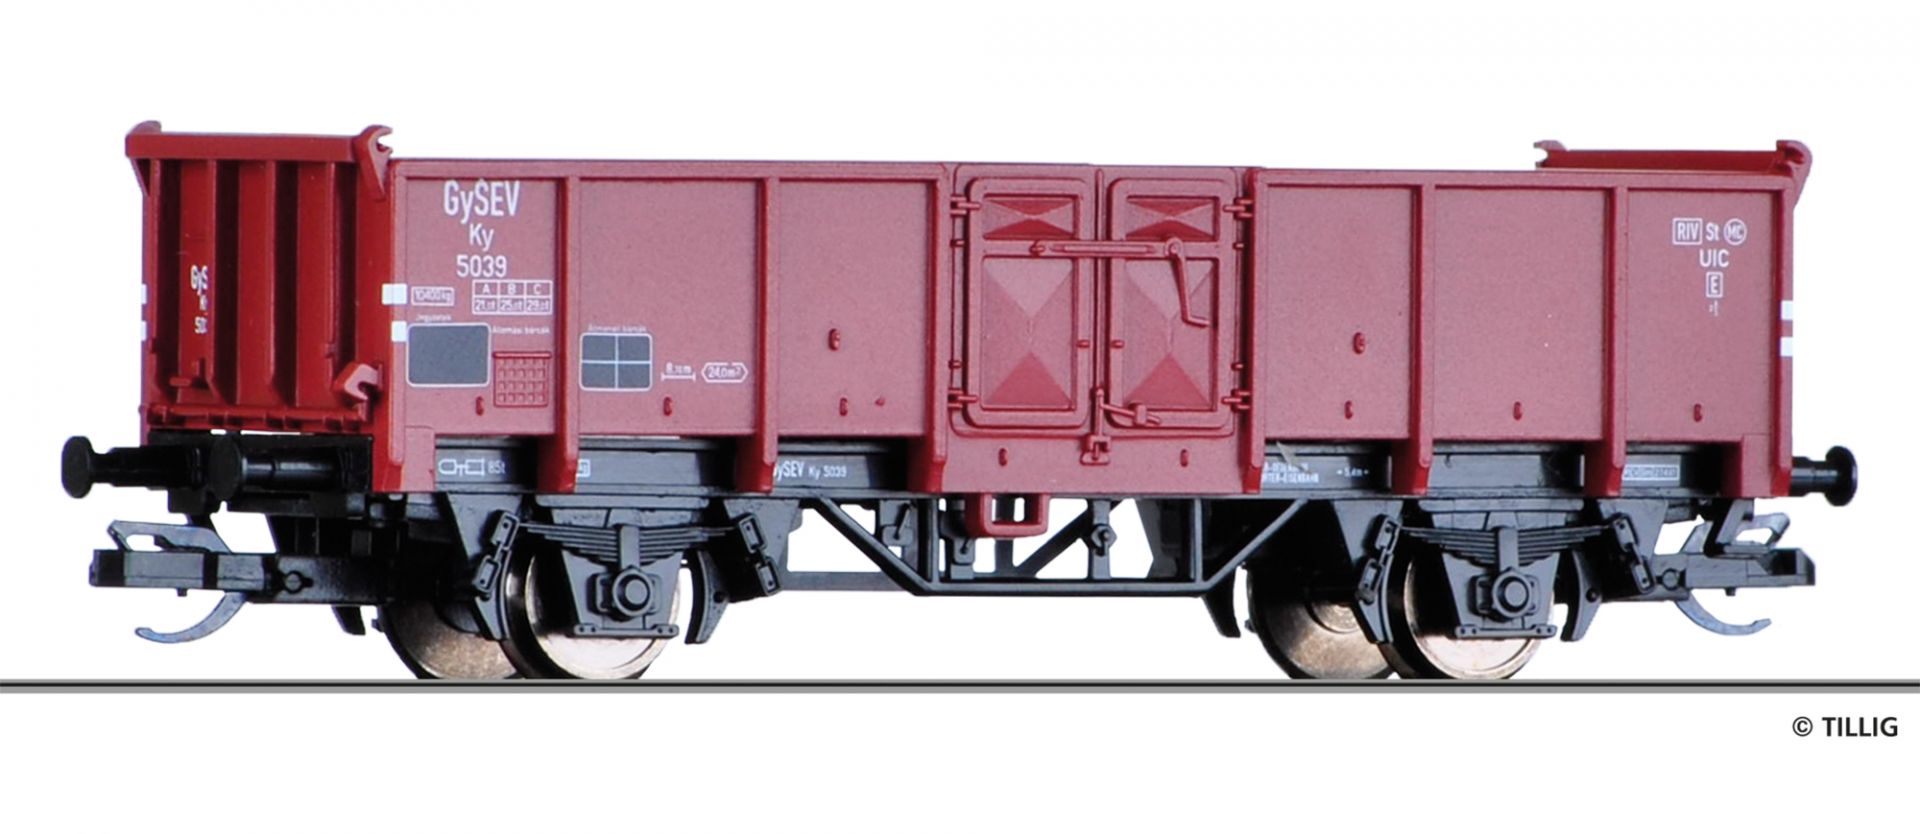 17256 | Offener Güterwagen GYSEV -werksseitig ausverkauft-